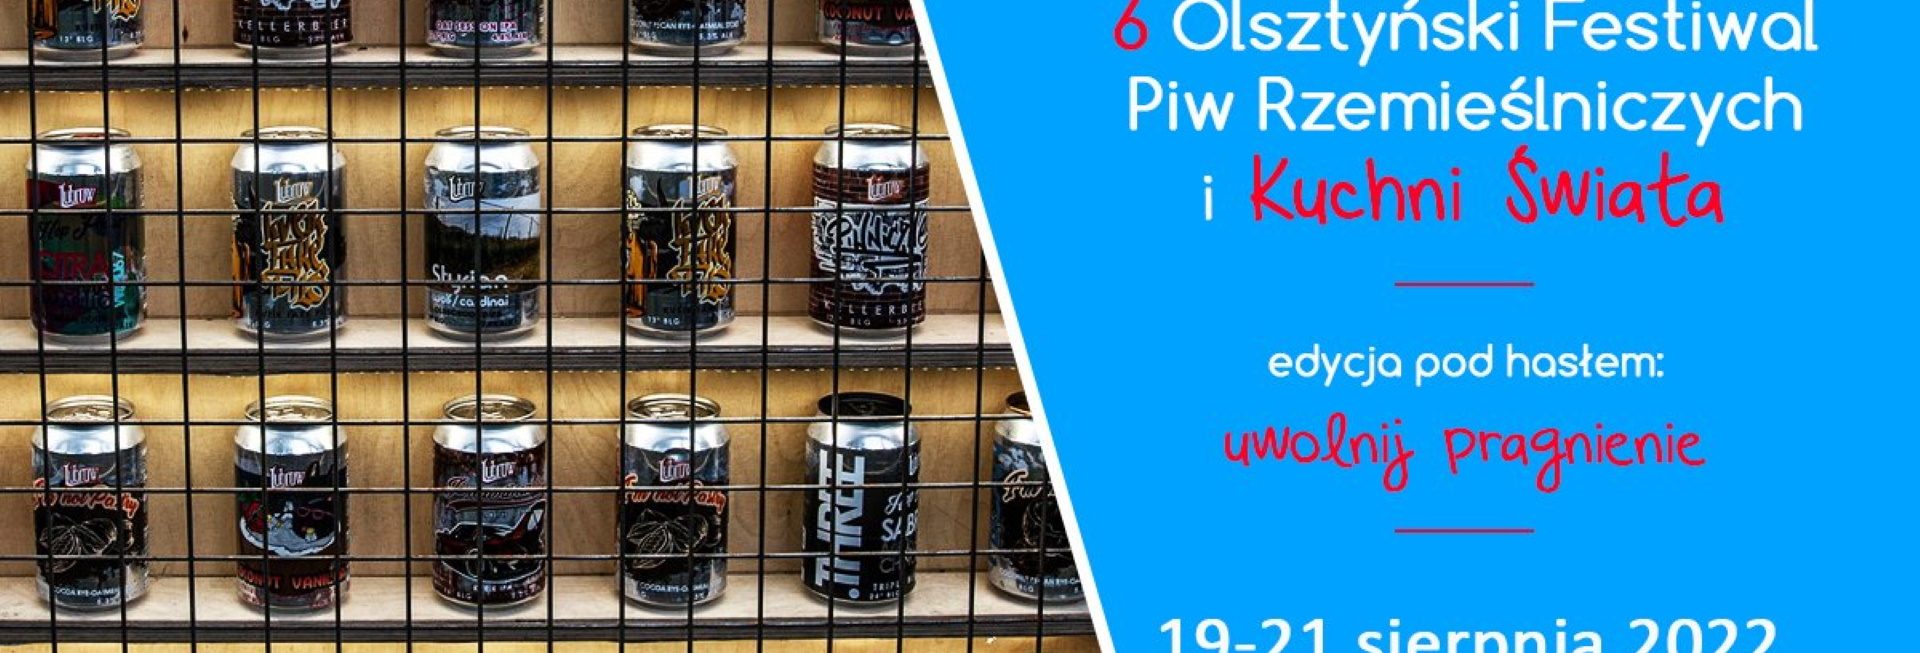 Plakat graficzny zapraszający do Olsztyna na 6. edycję Olsztyńskiego Festiwalu Piw Rzemieślniczych – Olsztyn 2022.